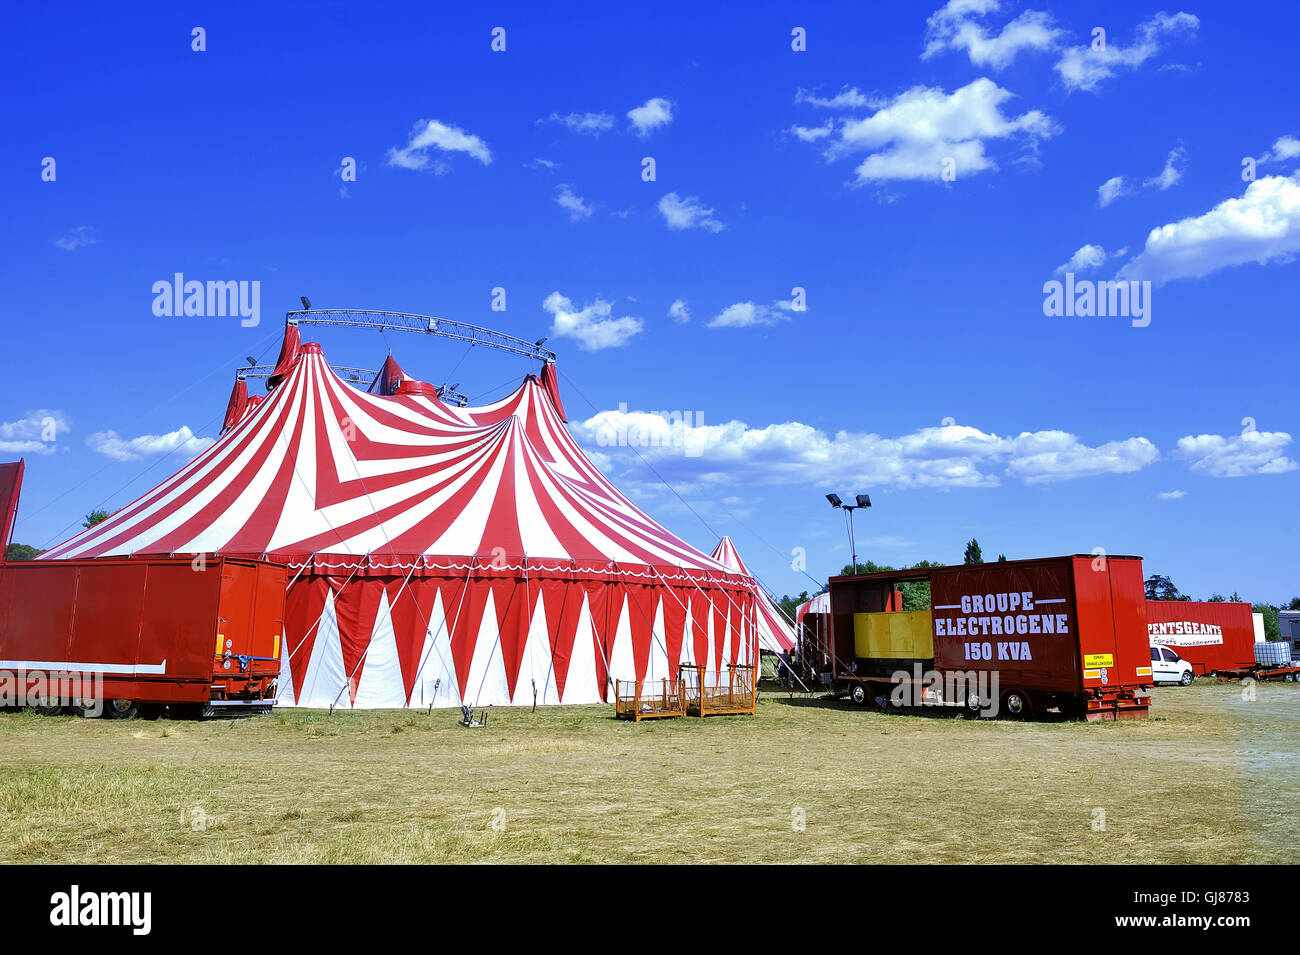 Cirque chapiteau Banque de photographies et d'images à haute résolution -  Alamy